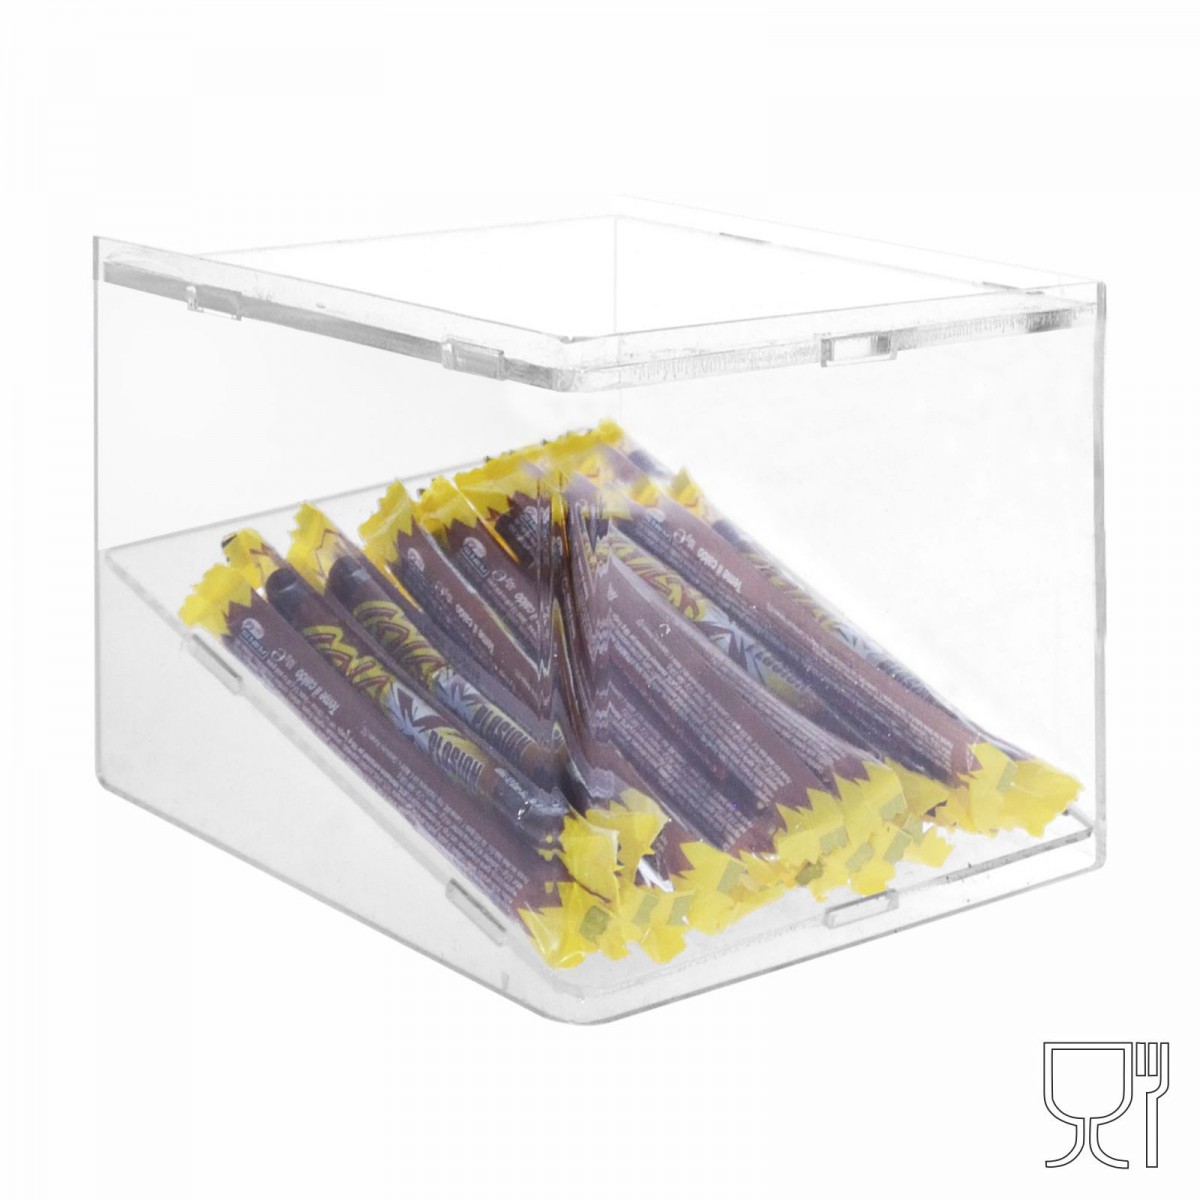 E-499 - Porta caramelle in plexiglass trasparente con Ripiano Inclinato